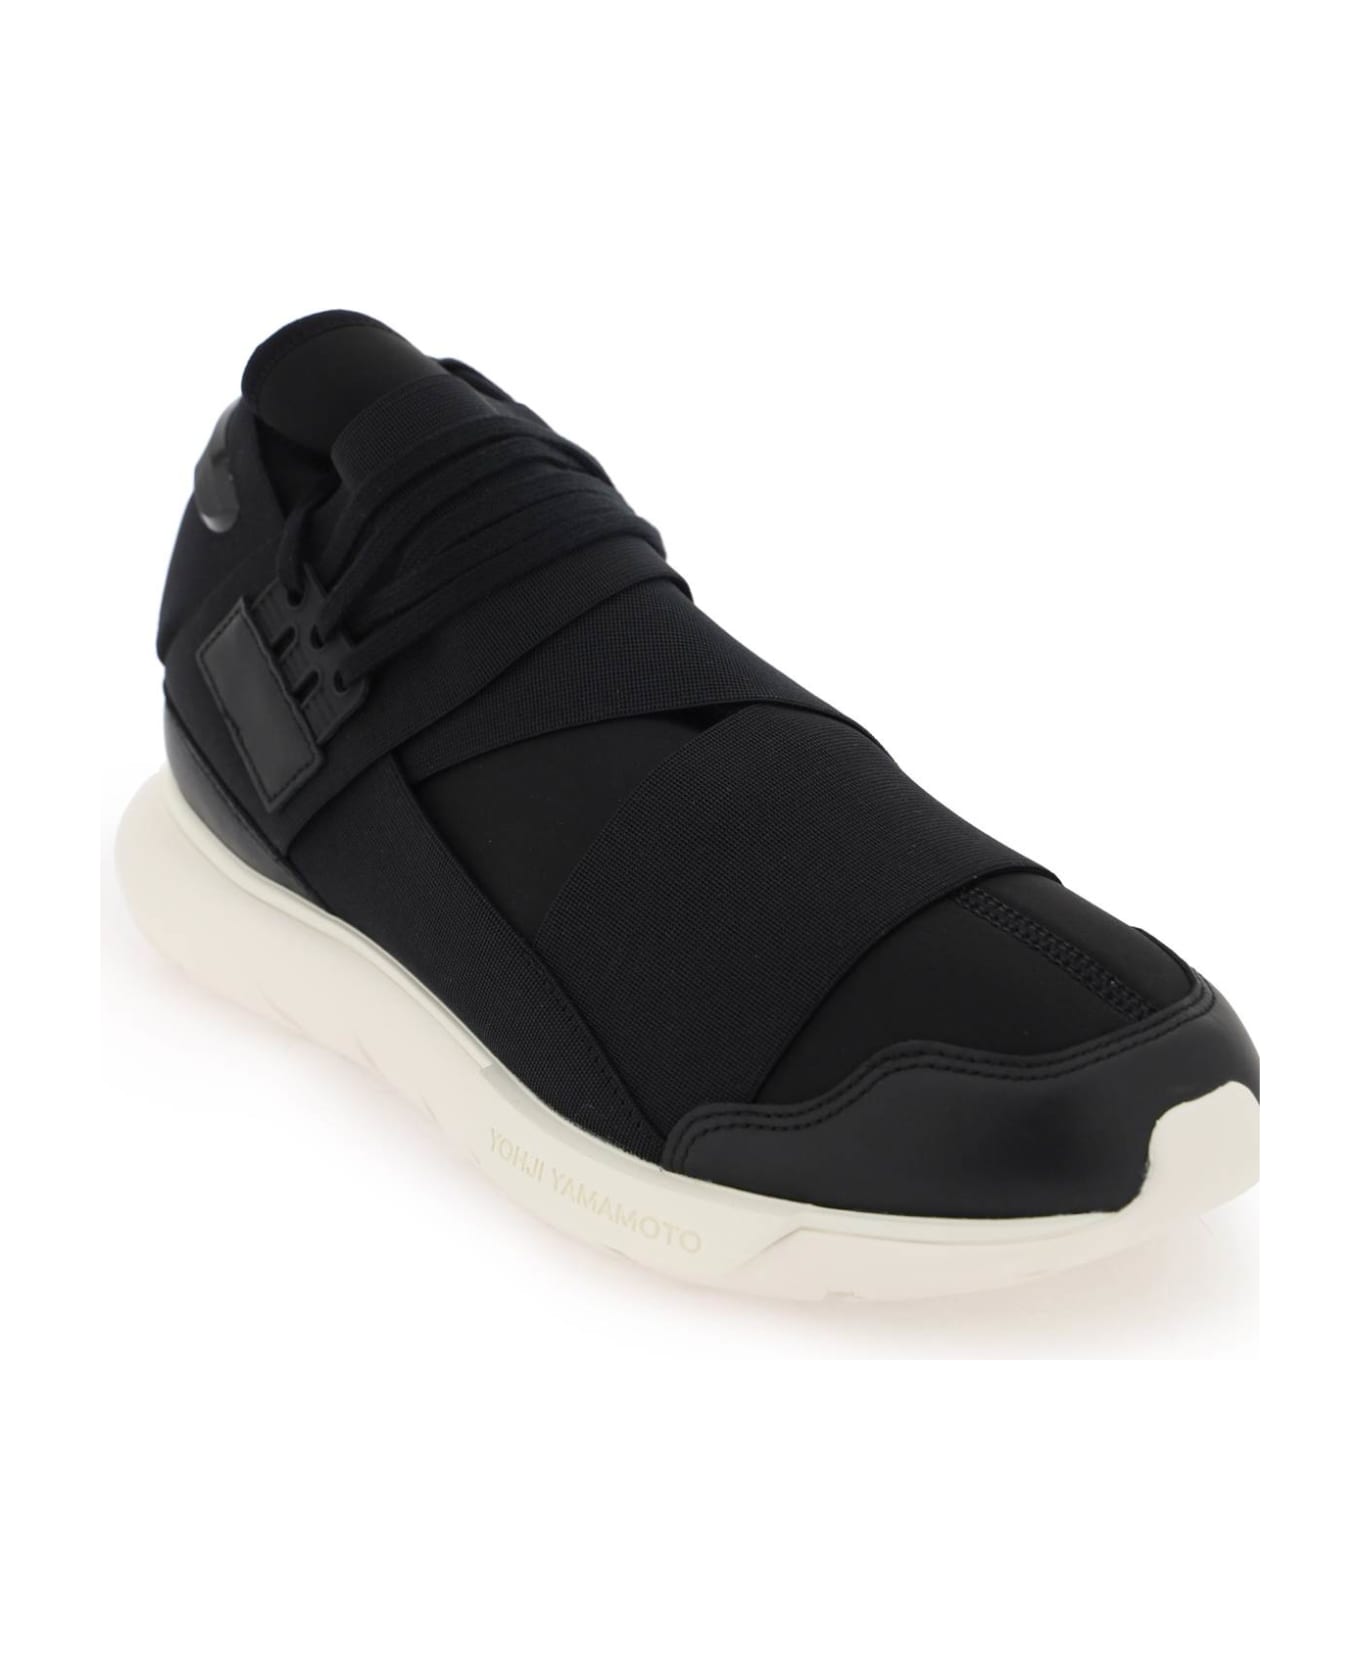 Y-3 Qasa Sneakers - BLACKBLACKOWHITE